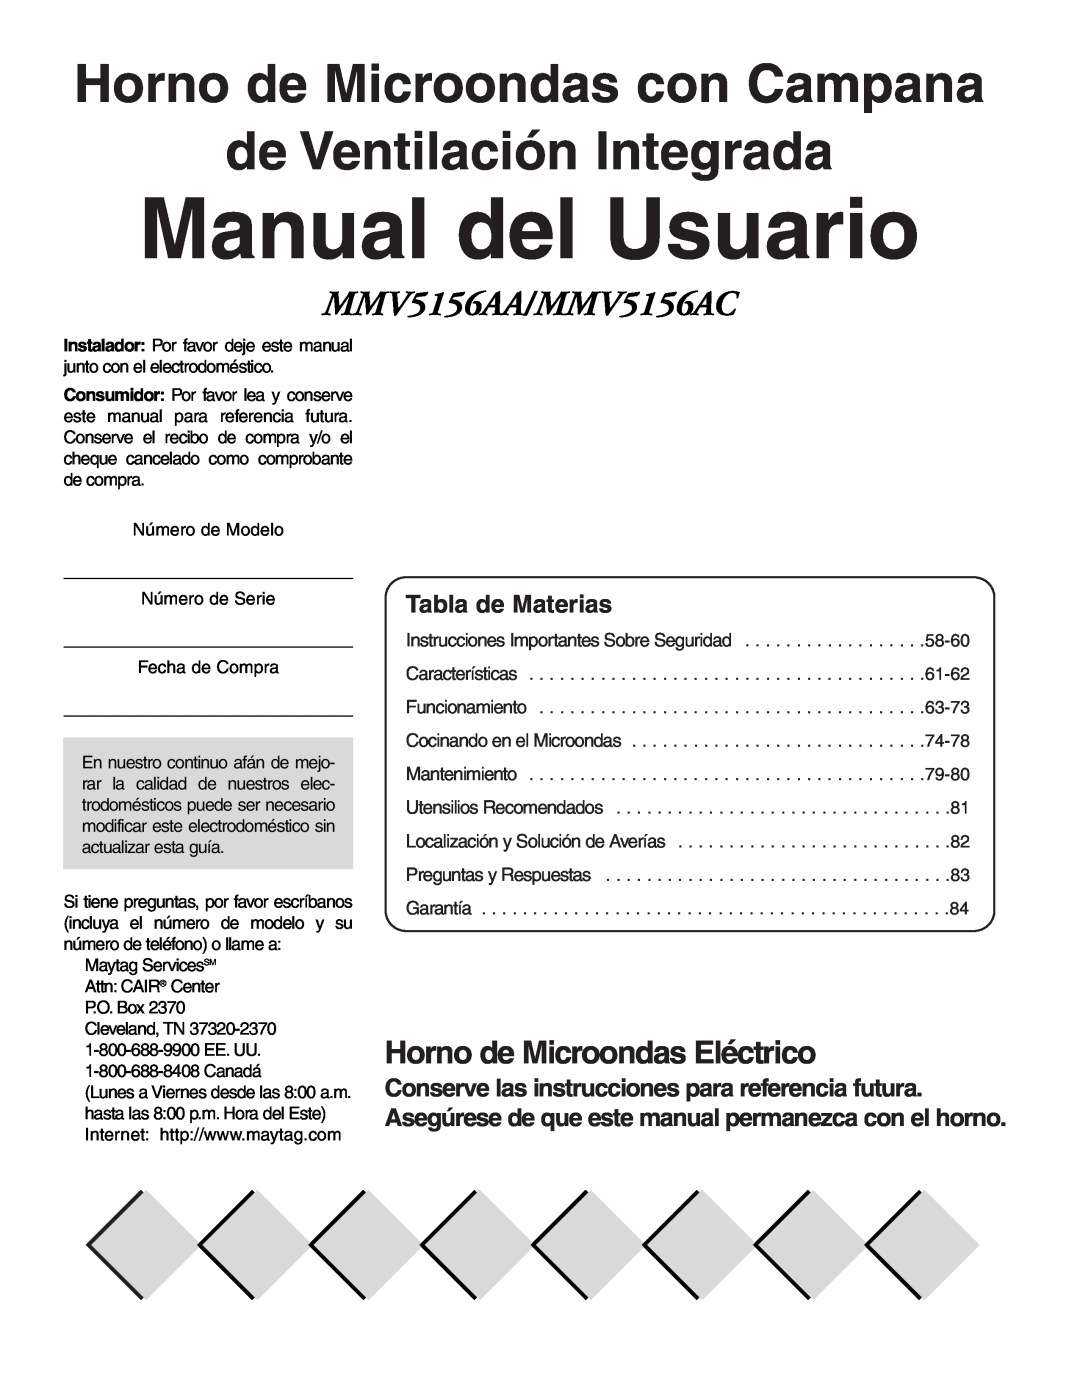 Maytag owner manual Manual del Usuario, Horno de Microondas Eléctrico, Tabla de Materias, MMV5156AA/MMV5156AC 